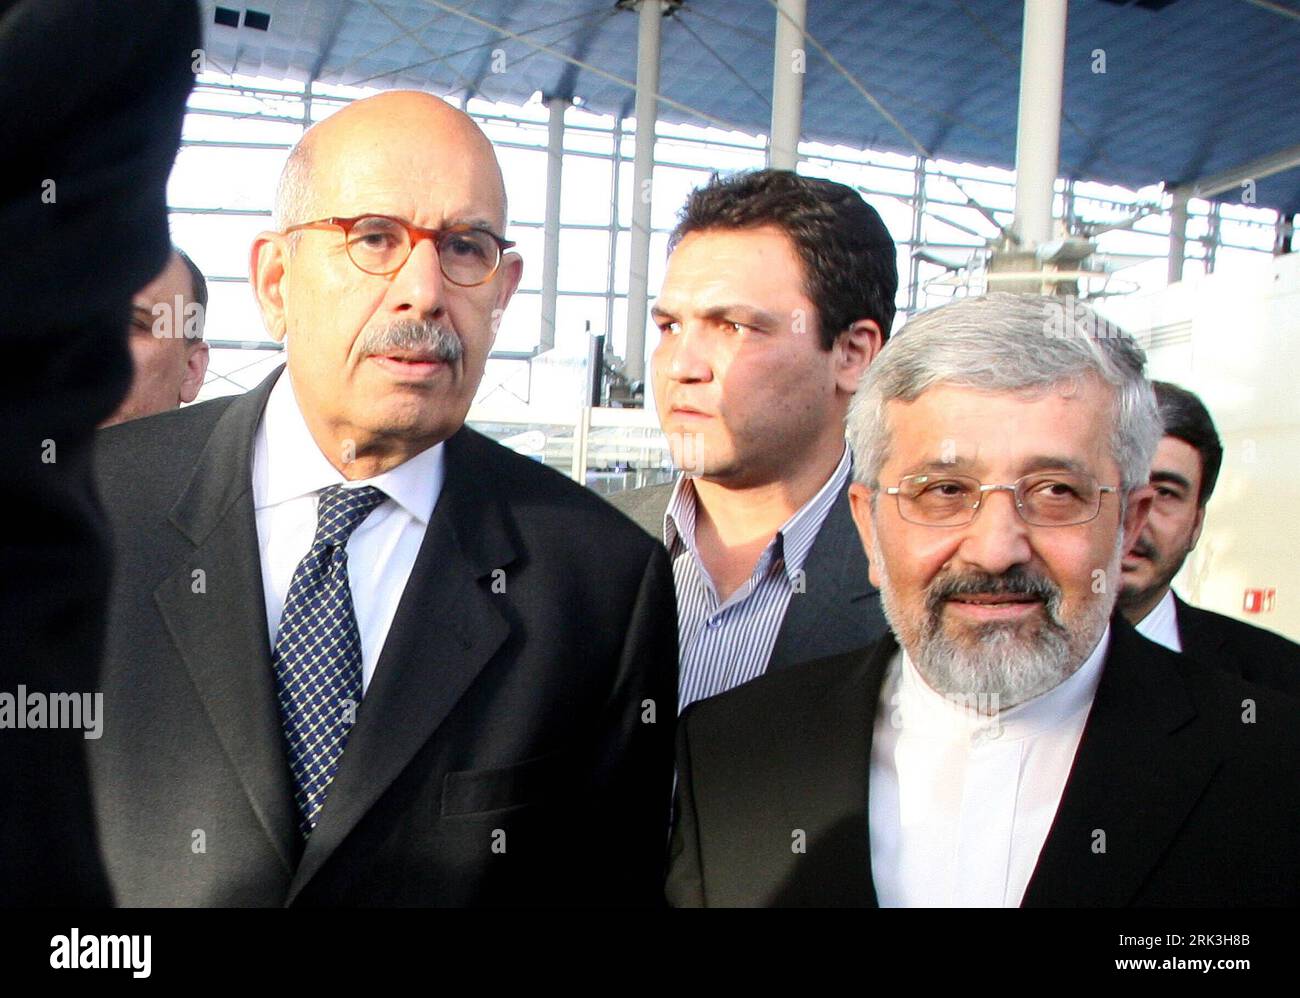 Bildnummer : 53515166 Datum : 03.10.2009 Copyright : imago/Xinhua (091004) -- TÉHÉRAN, 4 octobre 2009 (Xinhua) -- le Directeur général de l Agence internationale de l énergie atomique (AIEA) Mohamed ElBaradei (à gauche) marche avec l ambassadeur d Iran auprès de l AIEA Ali Asgchar Soltanieh (à droite) à l aéroport international Imam Khomeini à Téhéran, capitale de l Iran, le 3 octobre 2009. ElBaradei est arrivé samedi à Téhéran pour des entretiens avec des responsables iraniens sur le programme nucléaire de Téhéran. (Xinhua) (gxr) (2)IRAN-TÉHÉRAN-AIEA-NUCLEAR PUBLICATIONxNOTxINxCHN People Politik kbdig xub 2009 quer o0 El Baradei Atomenergiebehörde Atomges Banque D'Images